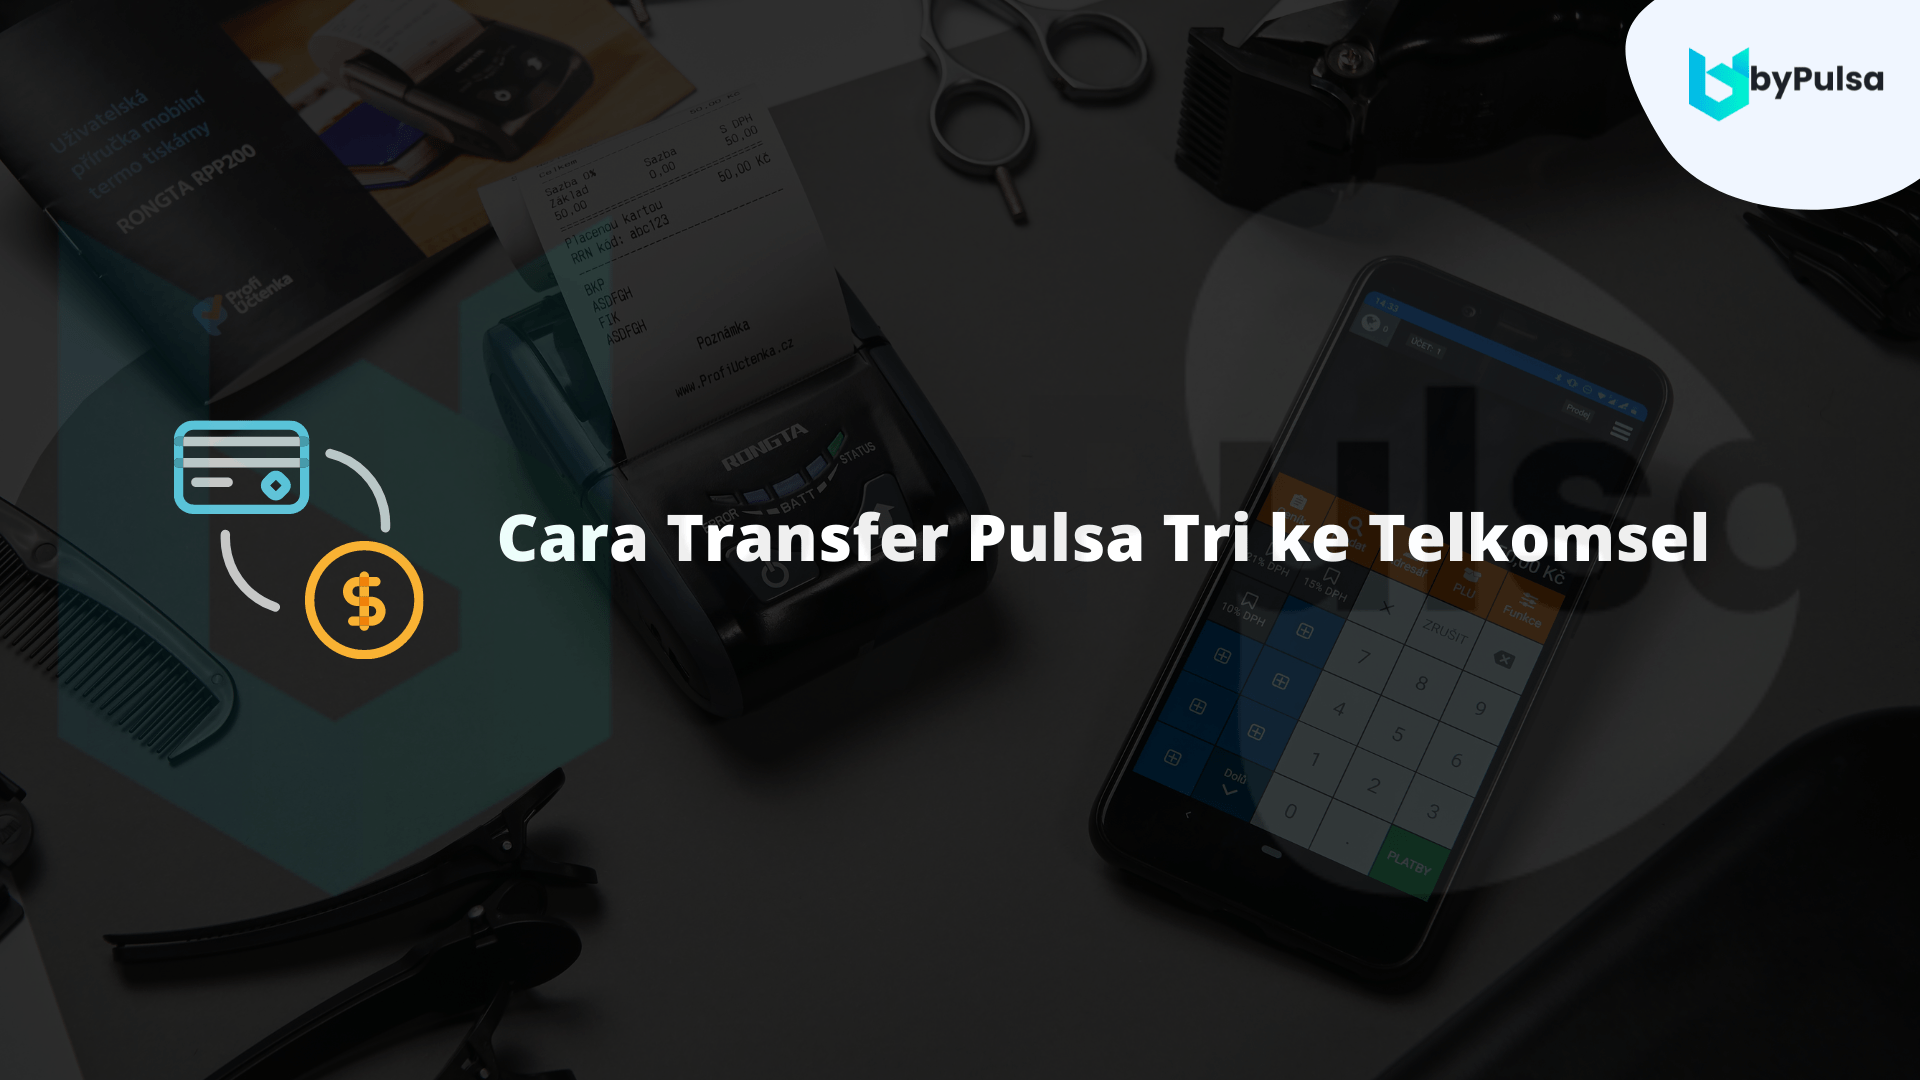 Cara Transfer Pulsa Tri Ke Telkomsel. 3 Cara Transfer Pulsa Tri ke Telkomsel, PRAKTIS!